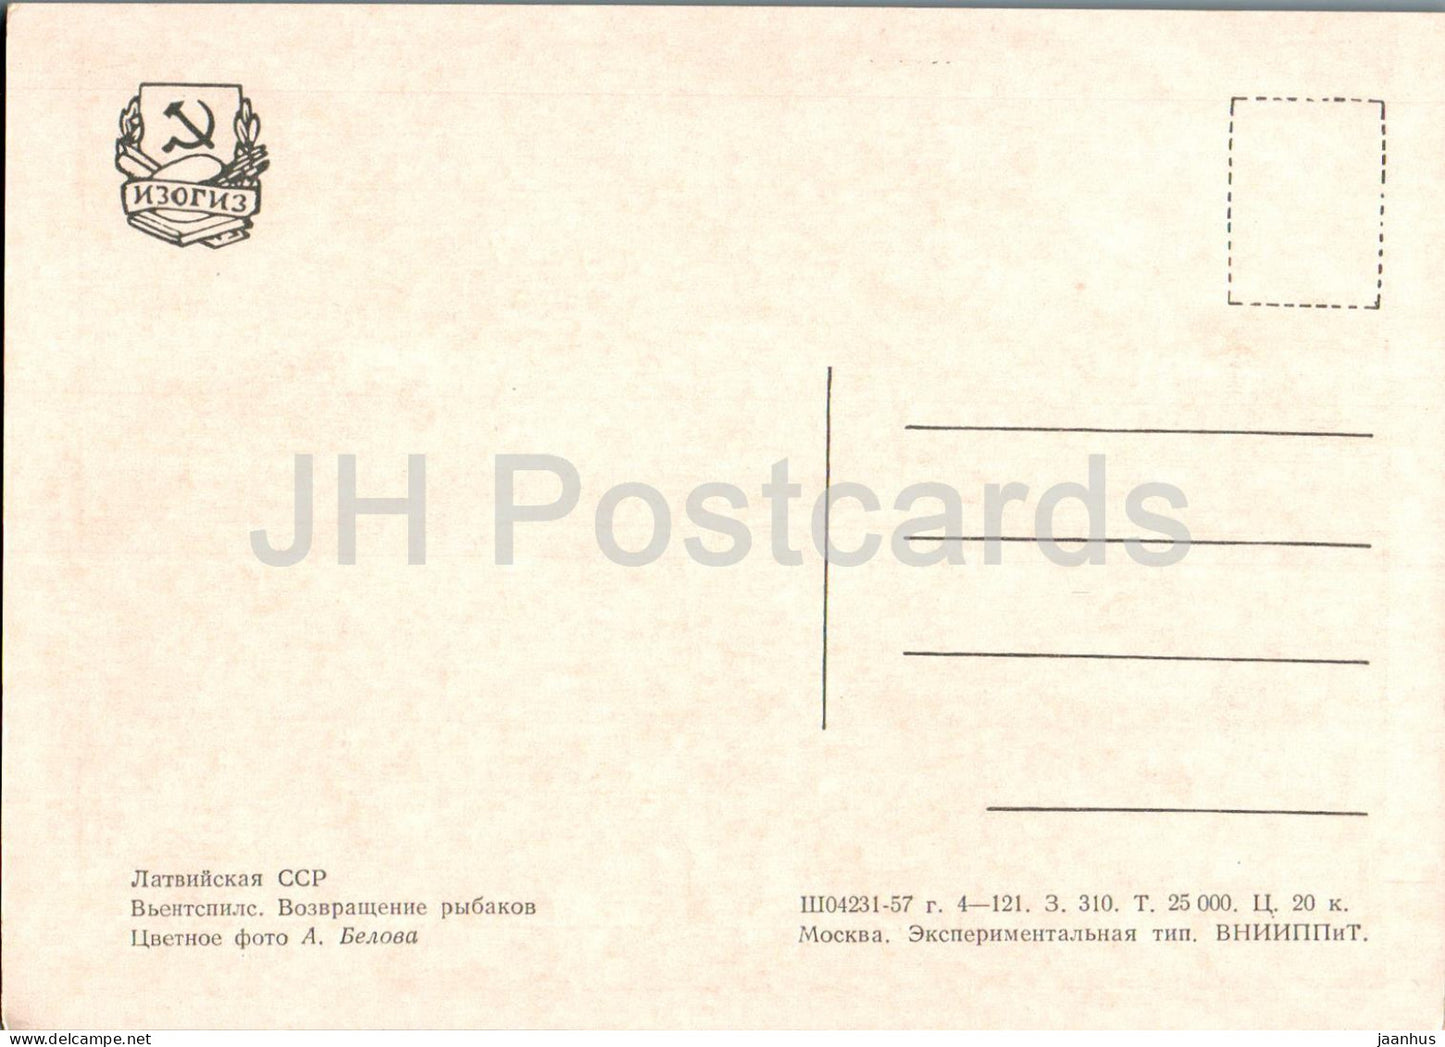 Ventspils - Fishermen returning home - ship - old postcard - 1957 - Latvia USSR - unused